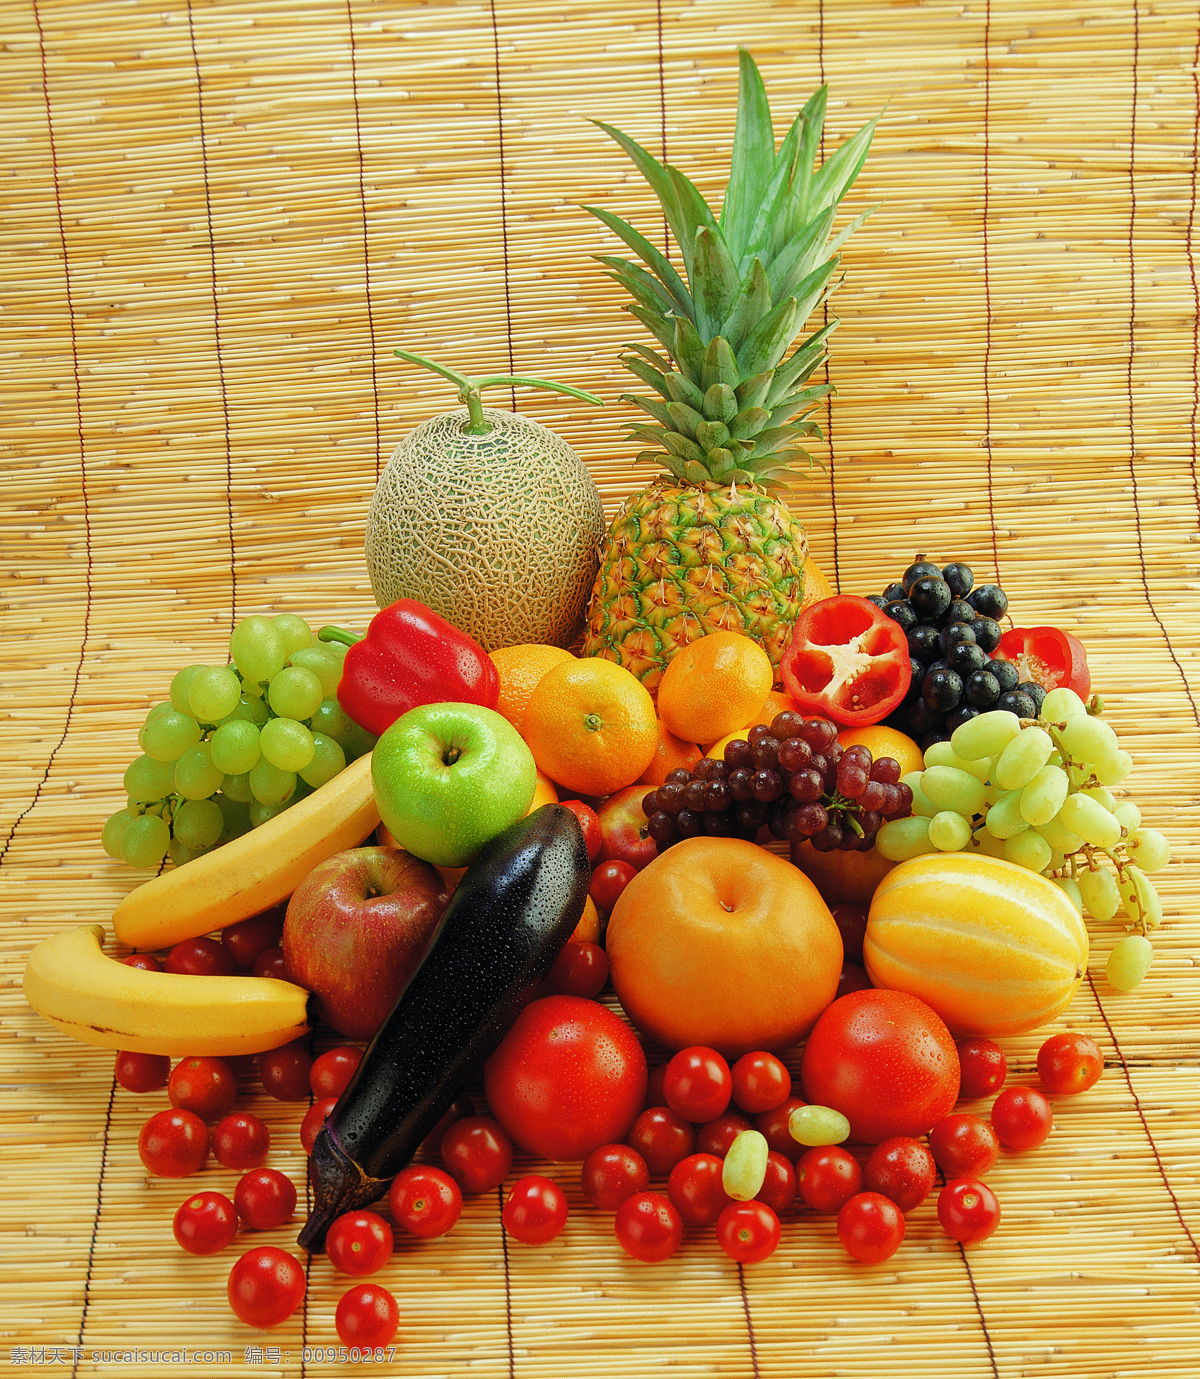 水果蔬菜 水果 番茄 蔬菜 菠萝 香蕉 新鲜 健康 苹果 背景图 生物世界